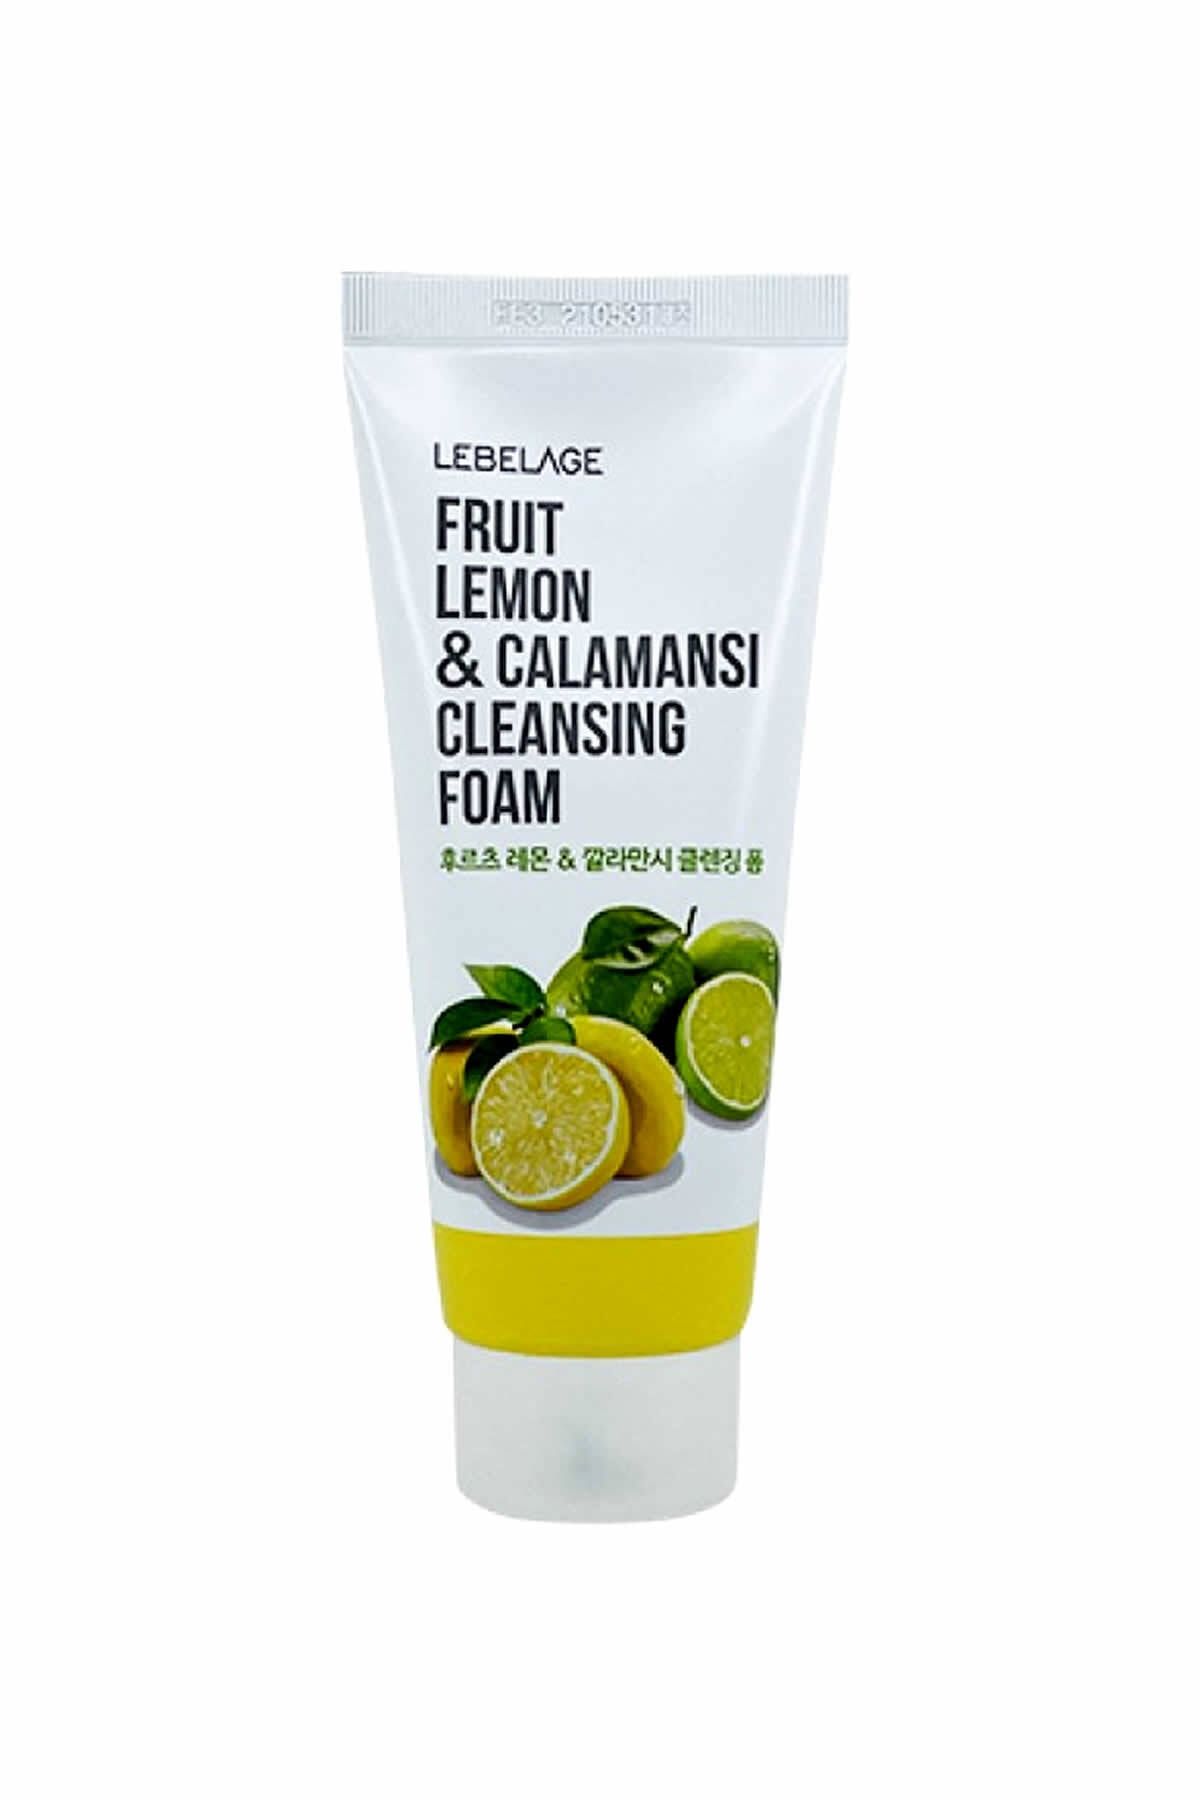 LEBELAGE Doğal Meyve Içeriği Lemon & Calamansi Yatıştırıcı Temizleyici Köpük Fruit Cleansing Foam